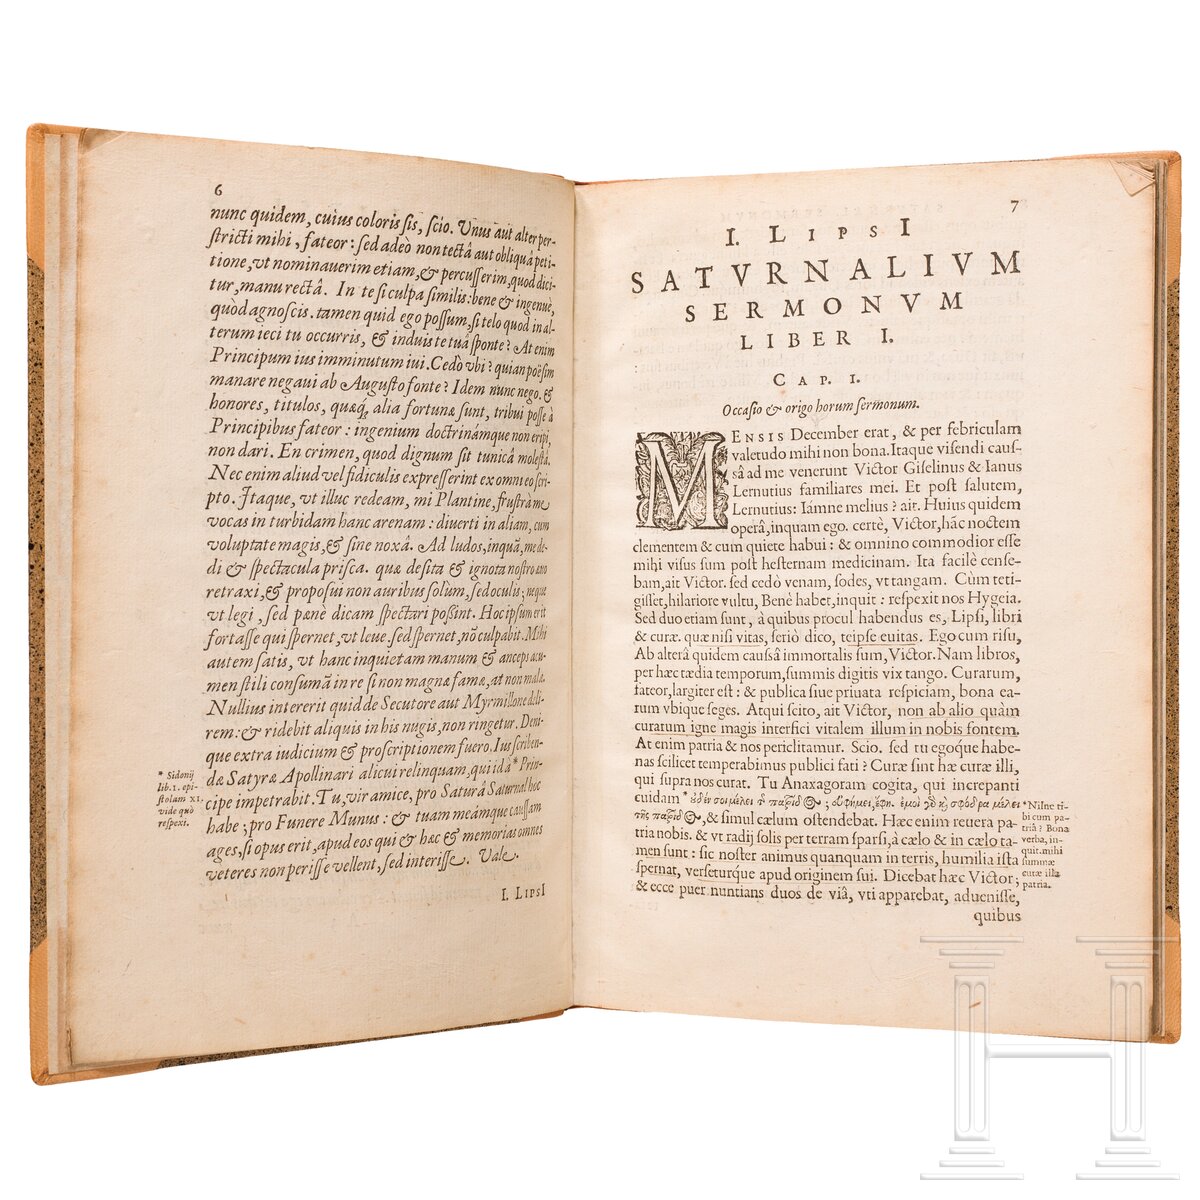 Iustus Lipsius, "Saturnalium Sermonum Libri Duo, Qui de Gladiatoribus", Antwerpen, 1604 - Image 2 of 5